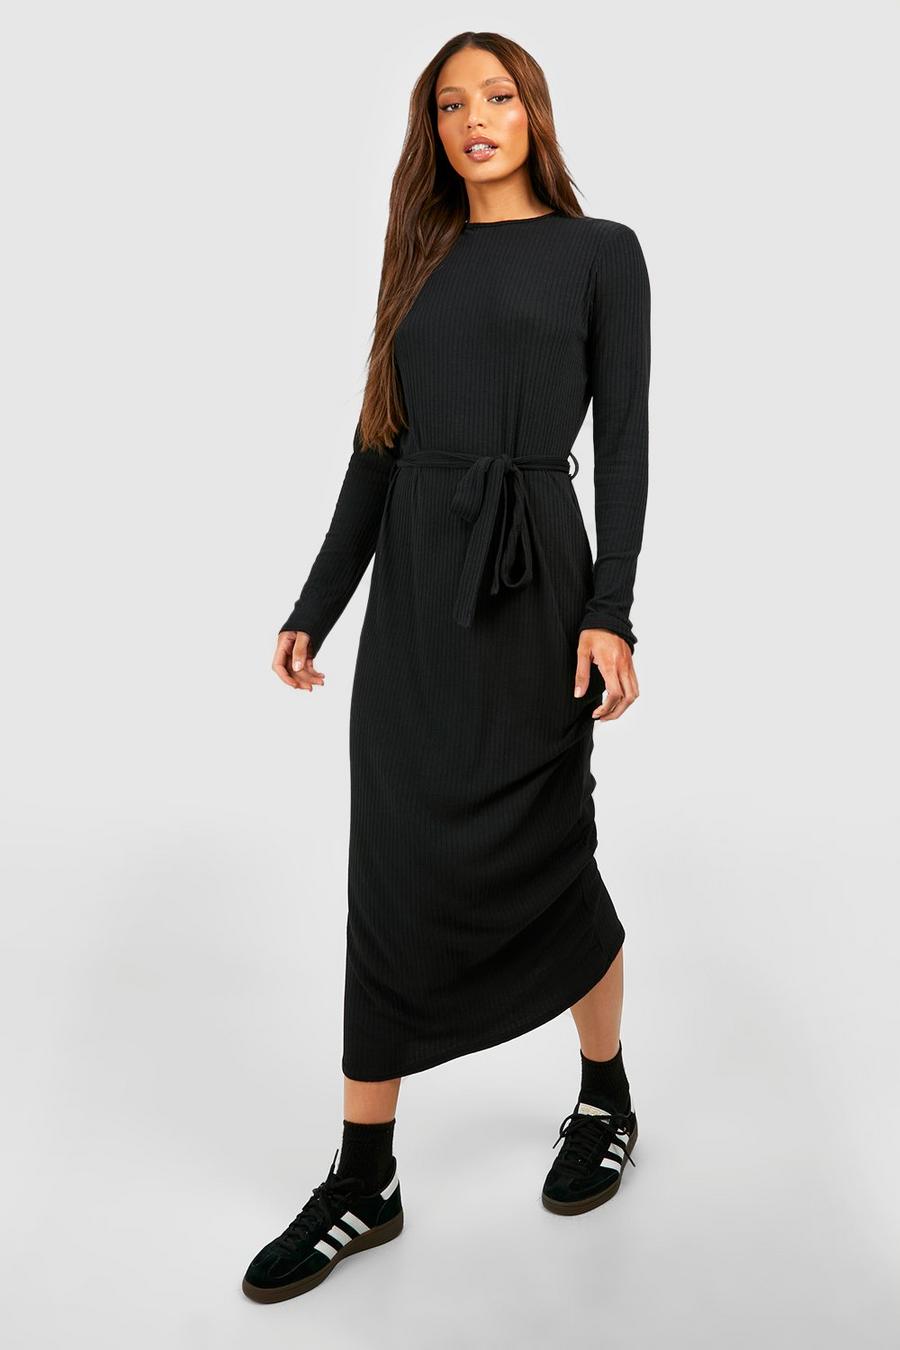 שחור שמלת מידי רכה עם שרוולים ארוכים, חגורה וצווארון עגול, לנשים גבוהות image number 1